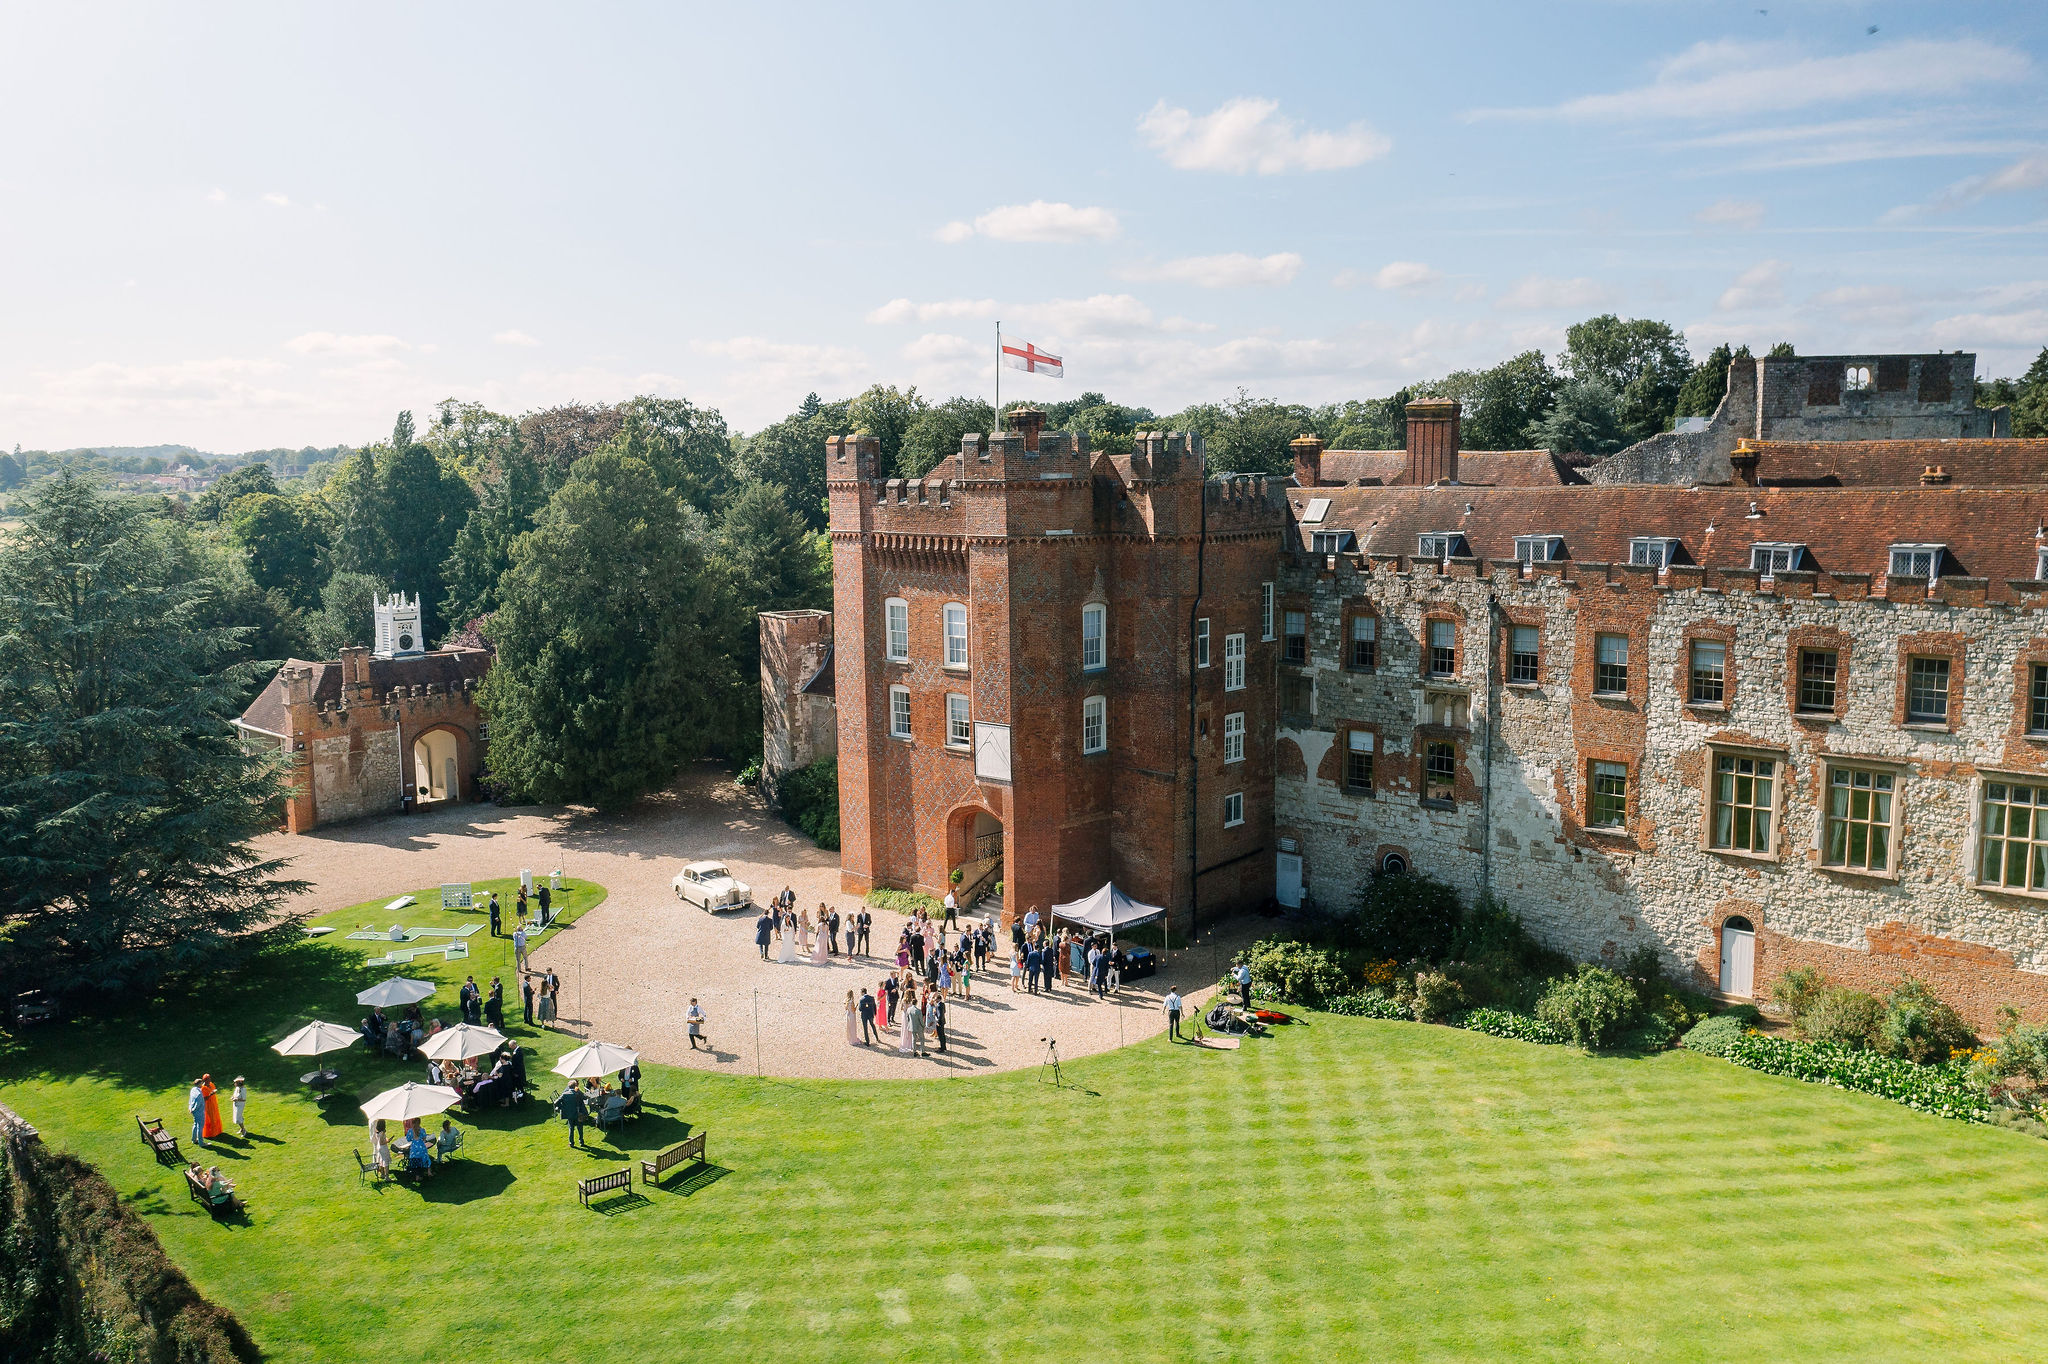 Castle wedding venue in Farnham Surrey